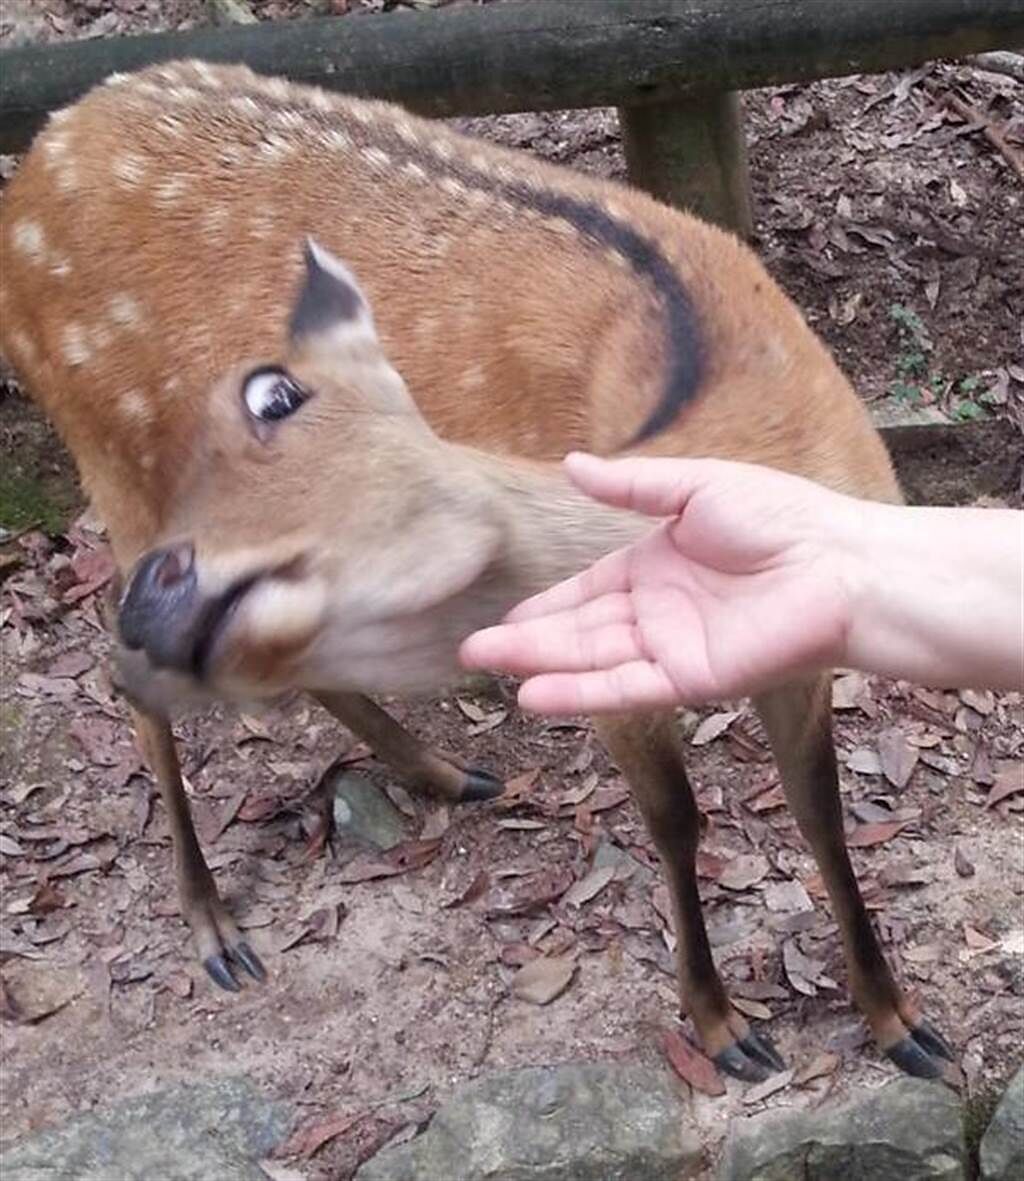 先前日本一名網友想摸奈良鹿，沒想到卻遭對方翻白眼對待，讓他當場心碎。(圖翻攝自twitter@ygo5dxal)